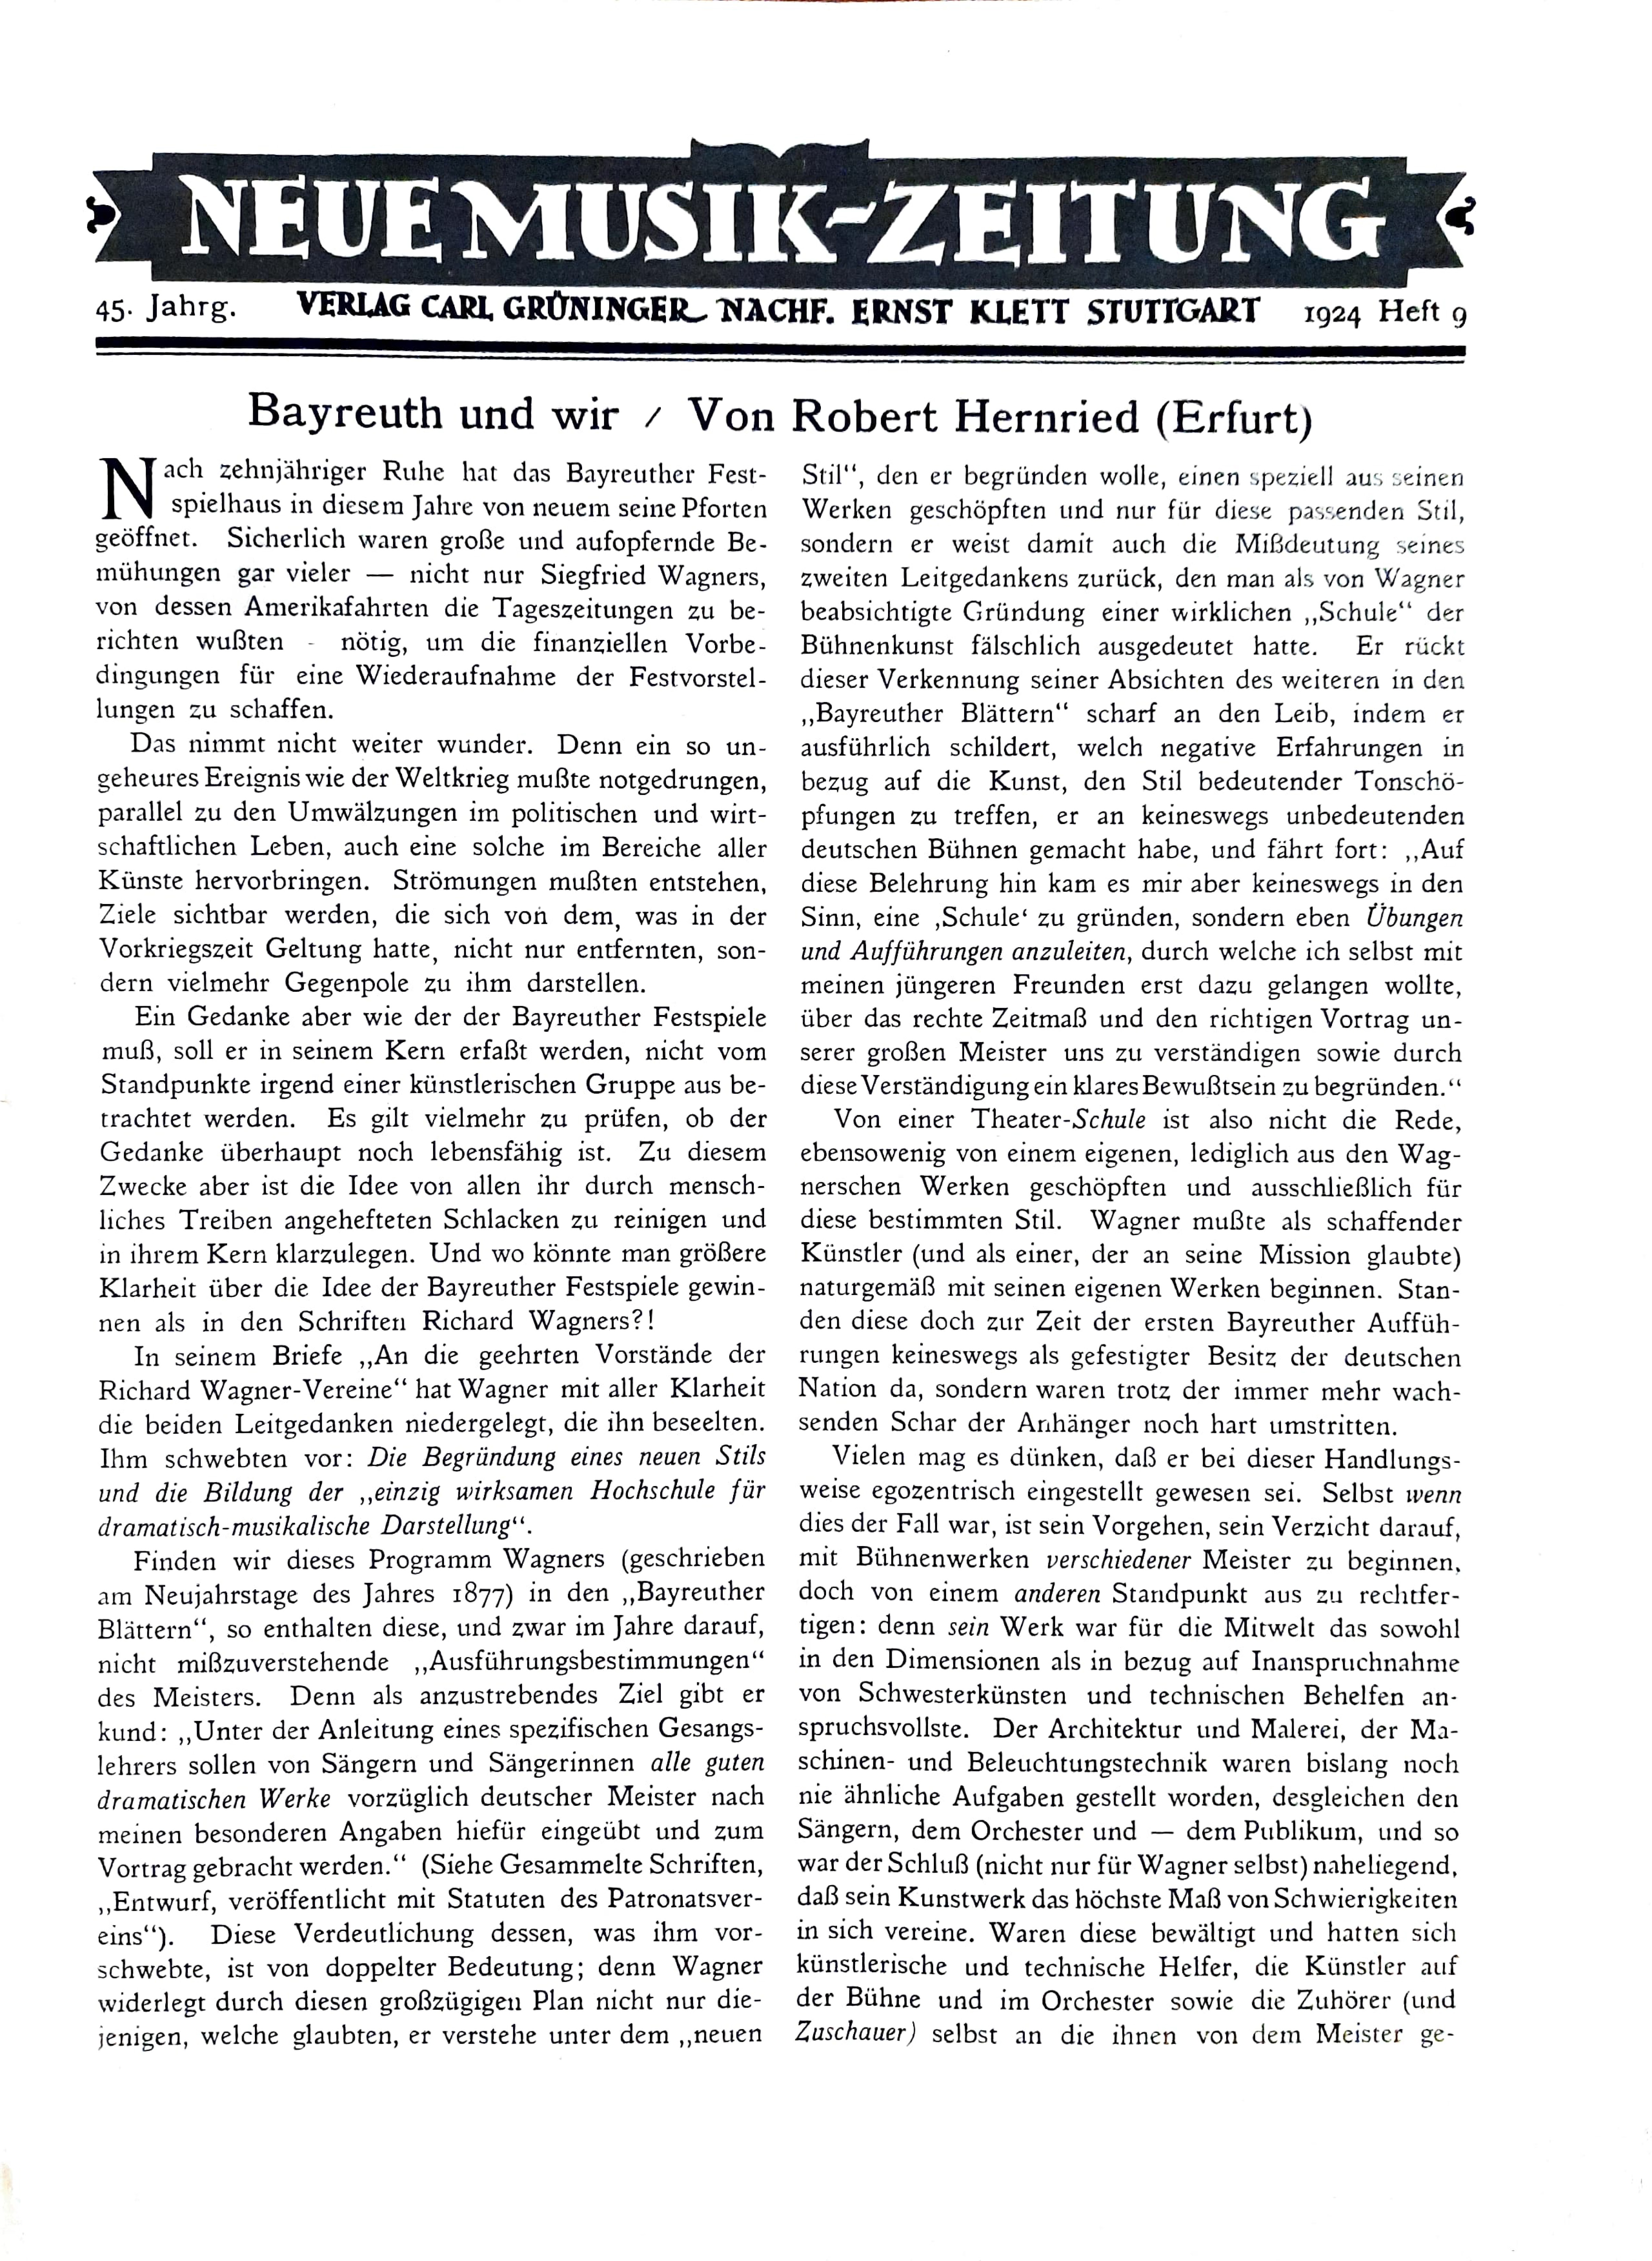 Robert Hernried, Neue Musik-Zeitung, 45. Jg., August 1924, Heft 1